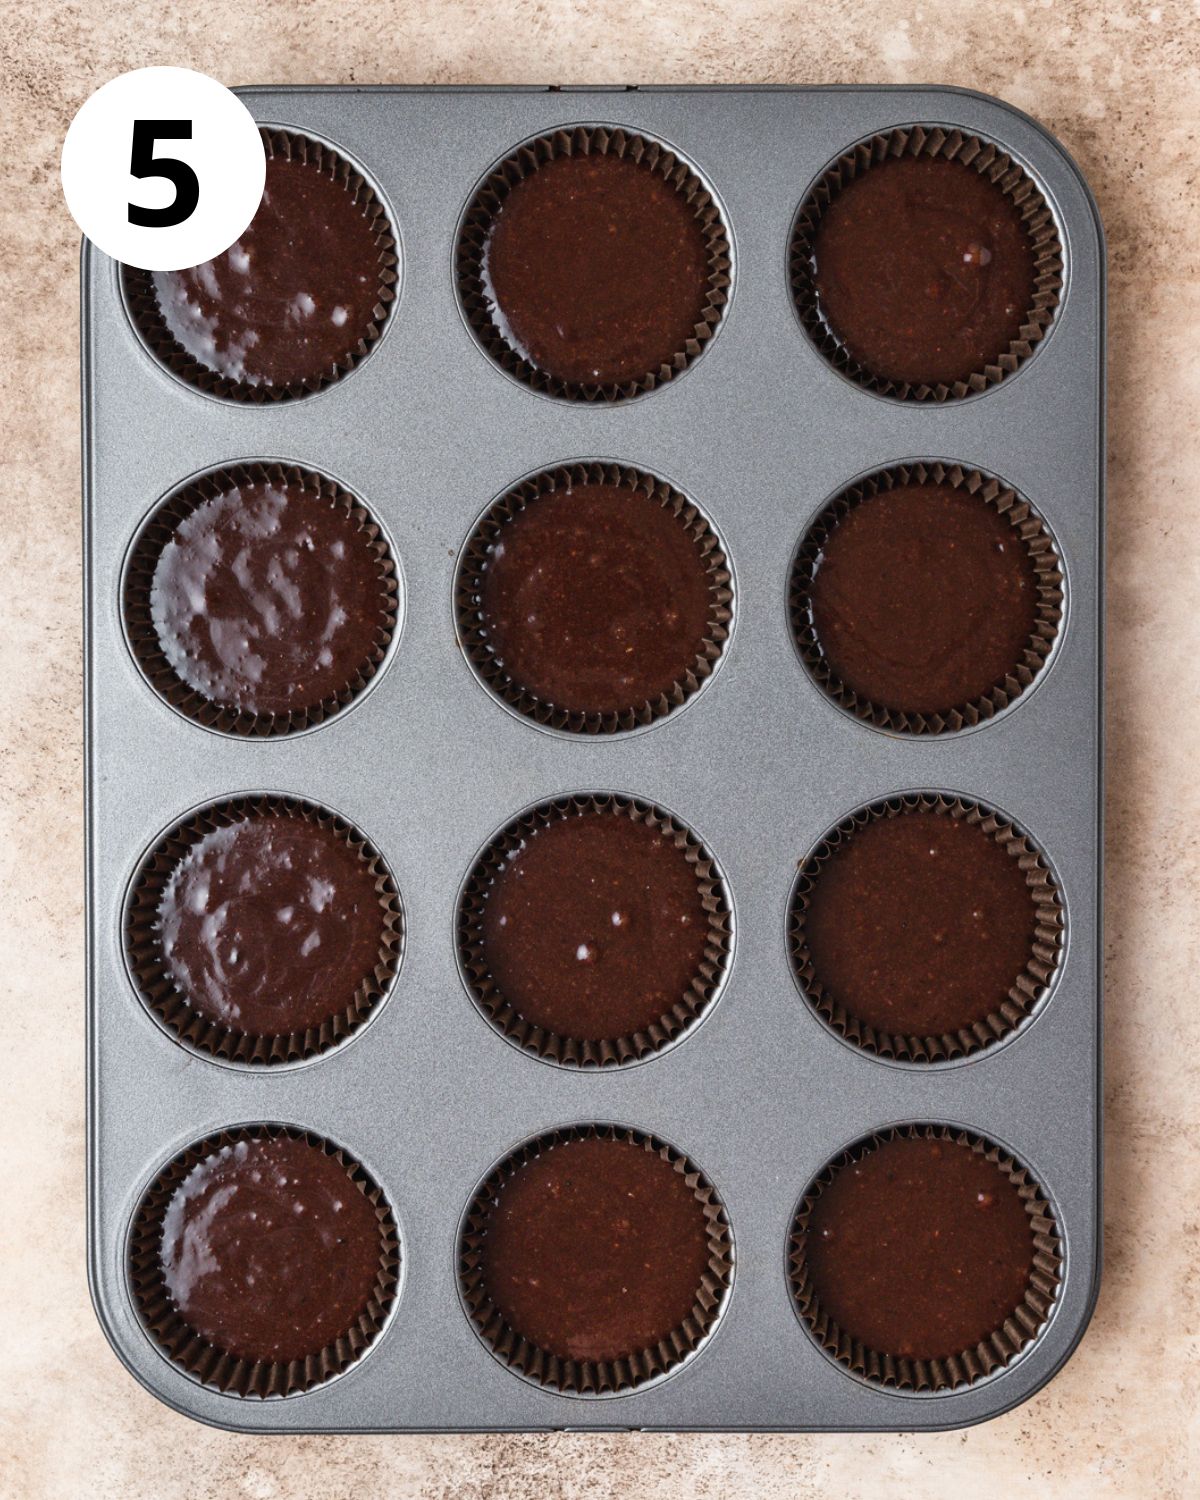 chocolate hazelnut cupcakes before baking.